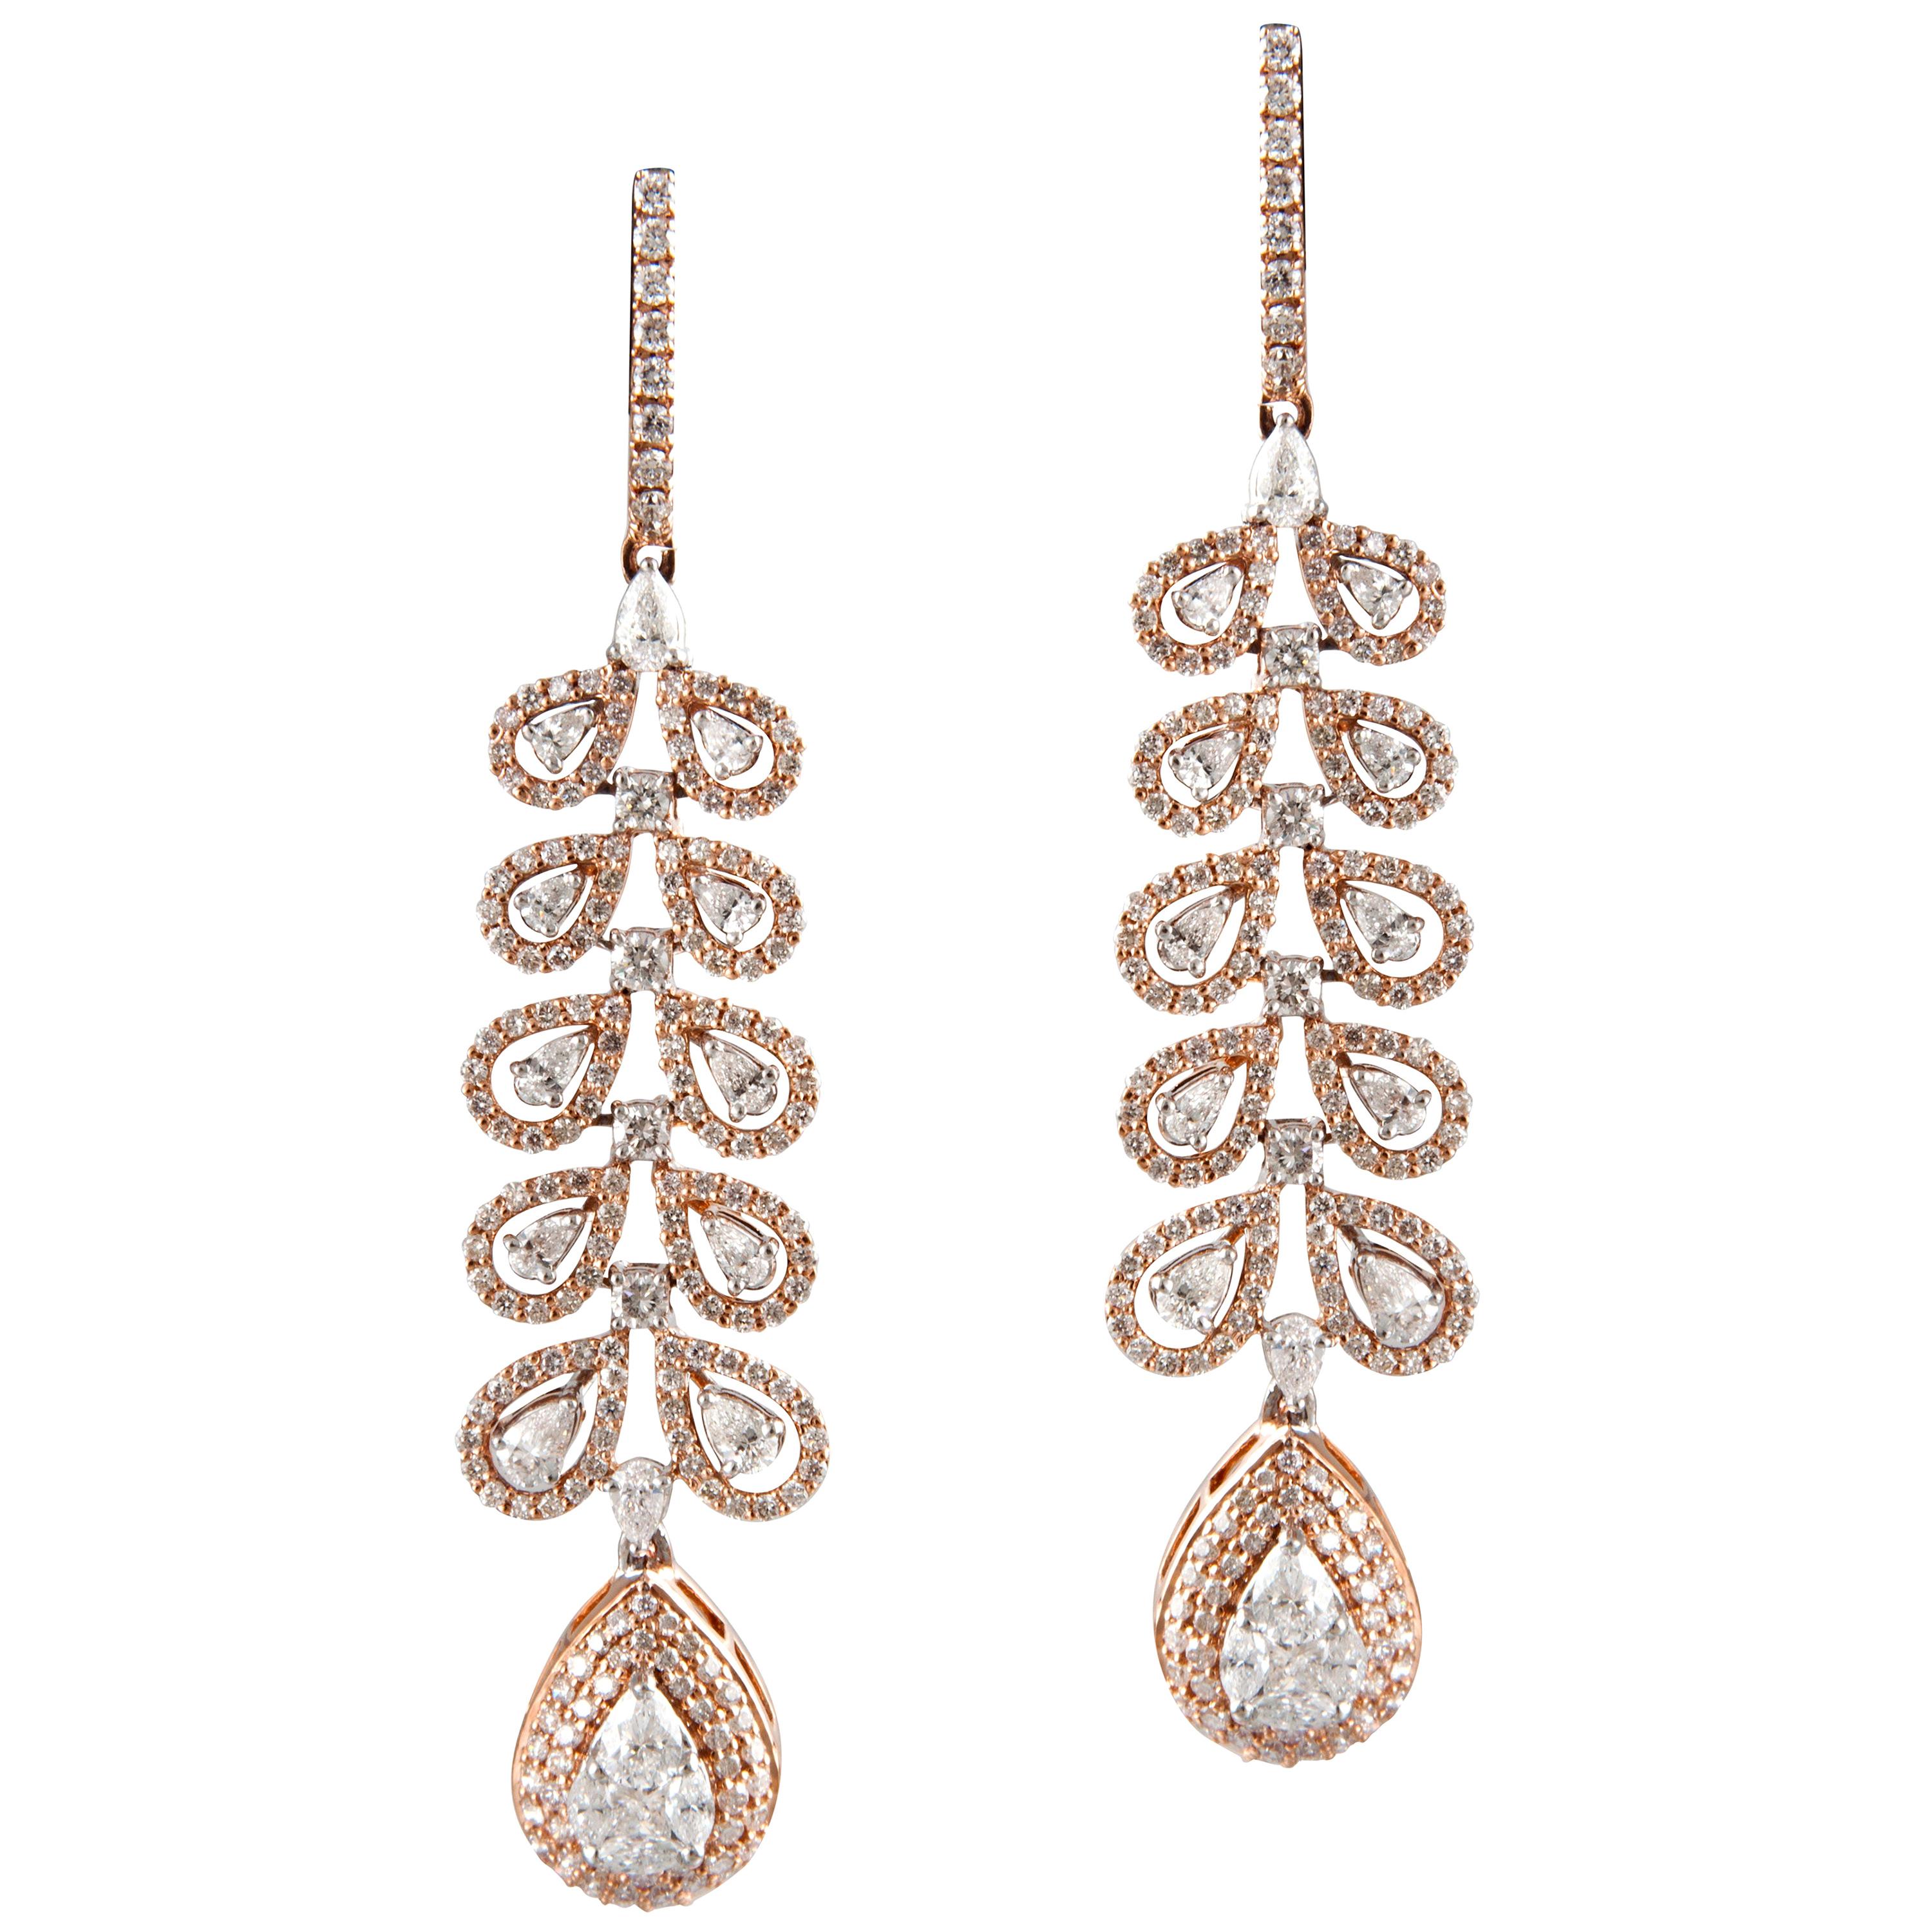 Boucles d'oreilles chandelier en or rose 18 carats, or blanc et diamants blancs